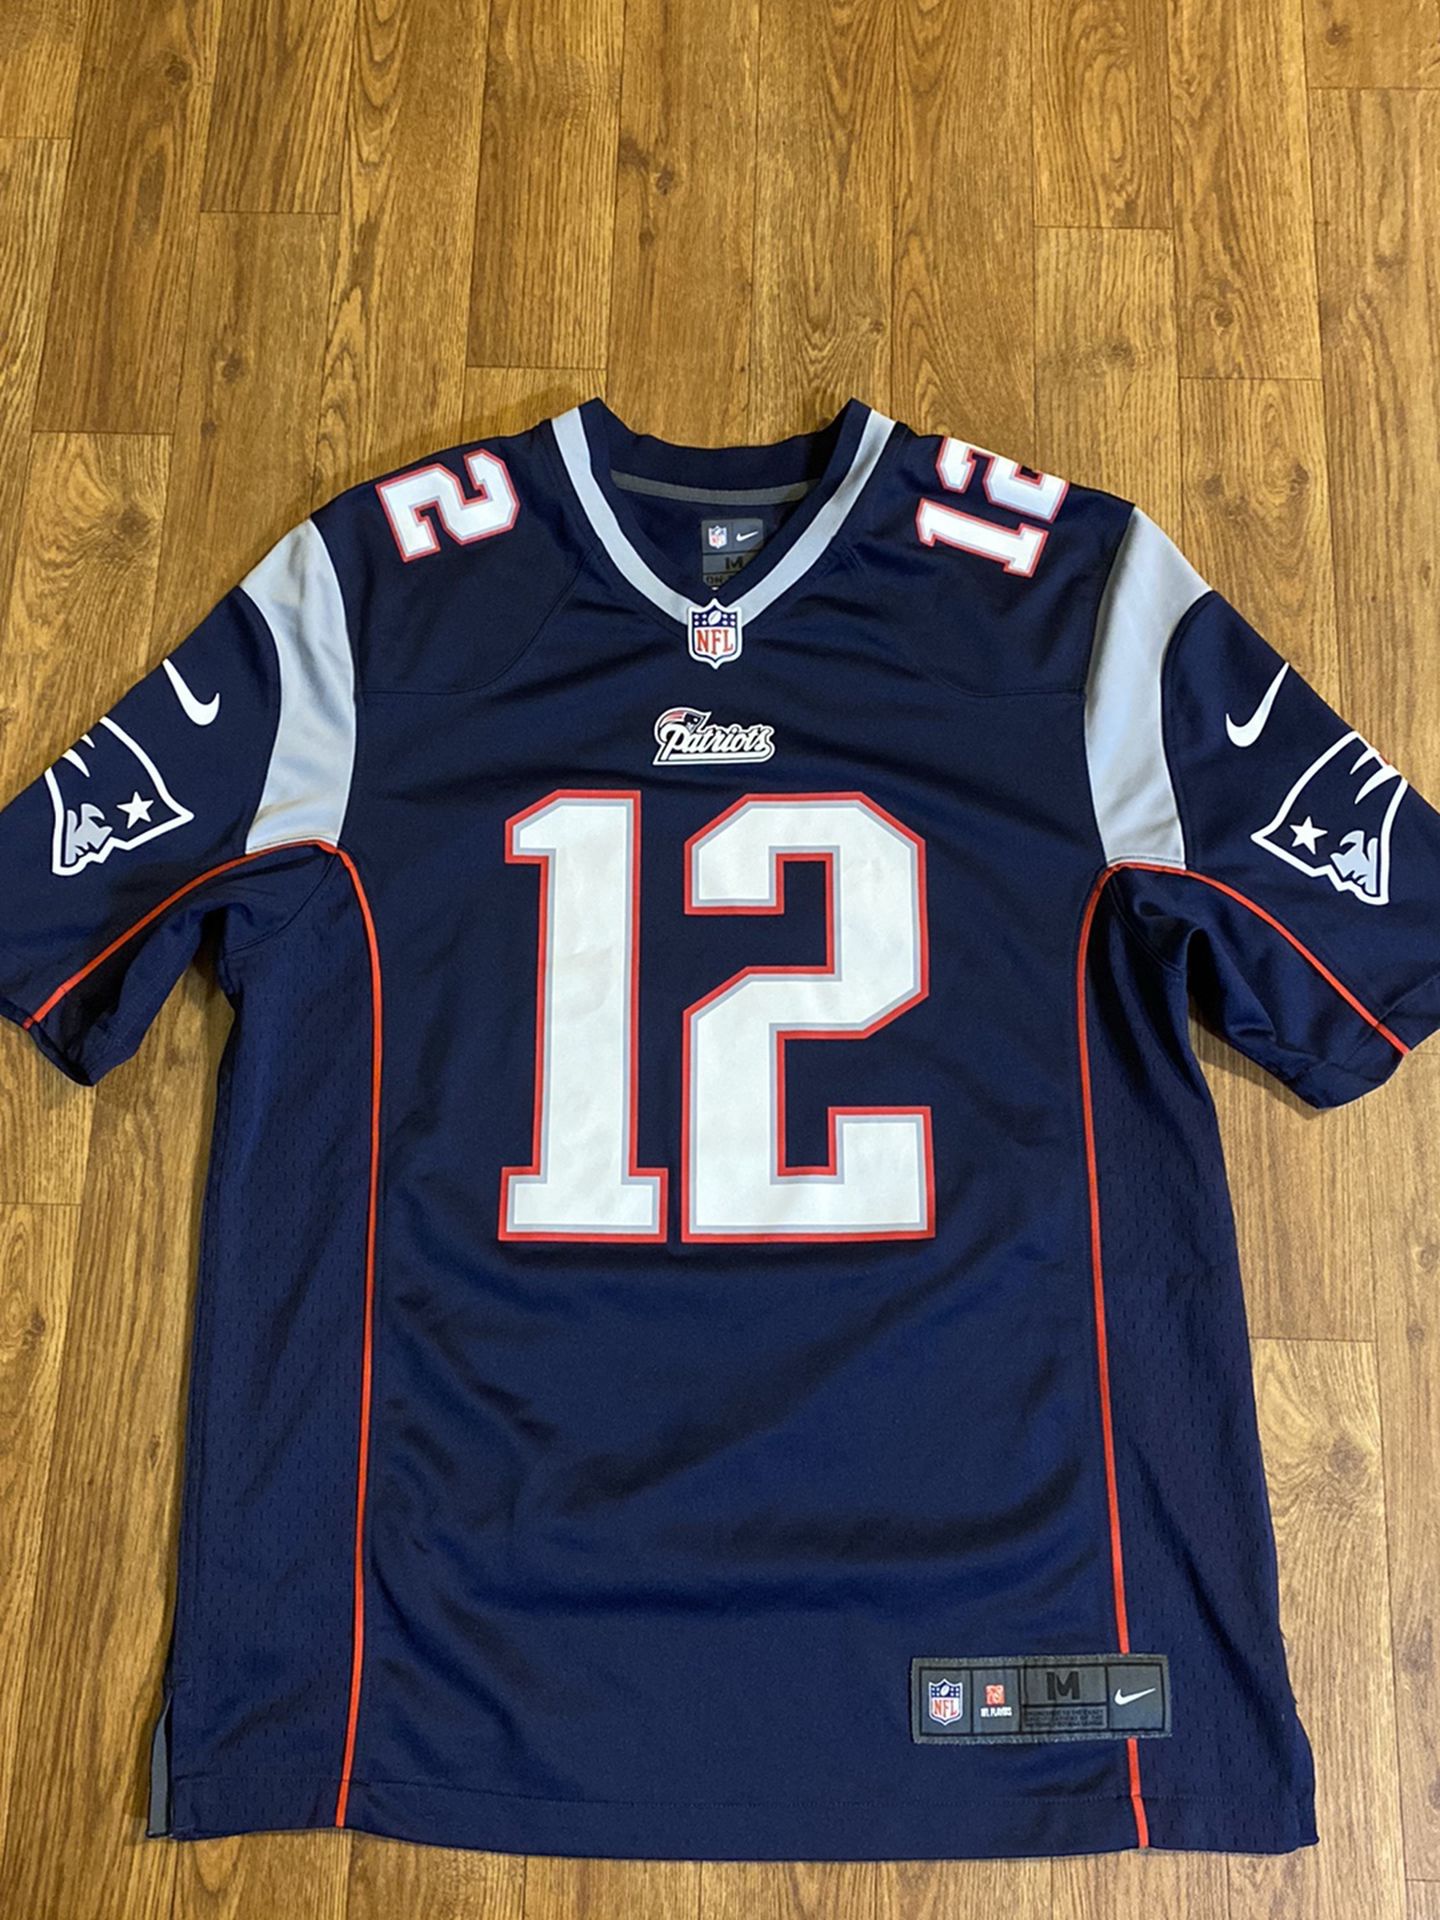 Nike New England Patriots “Tom Brady” Jersey, Size: Medium